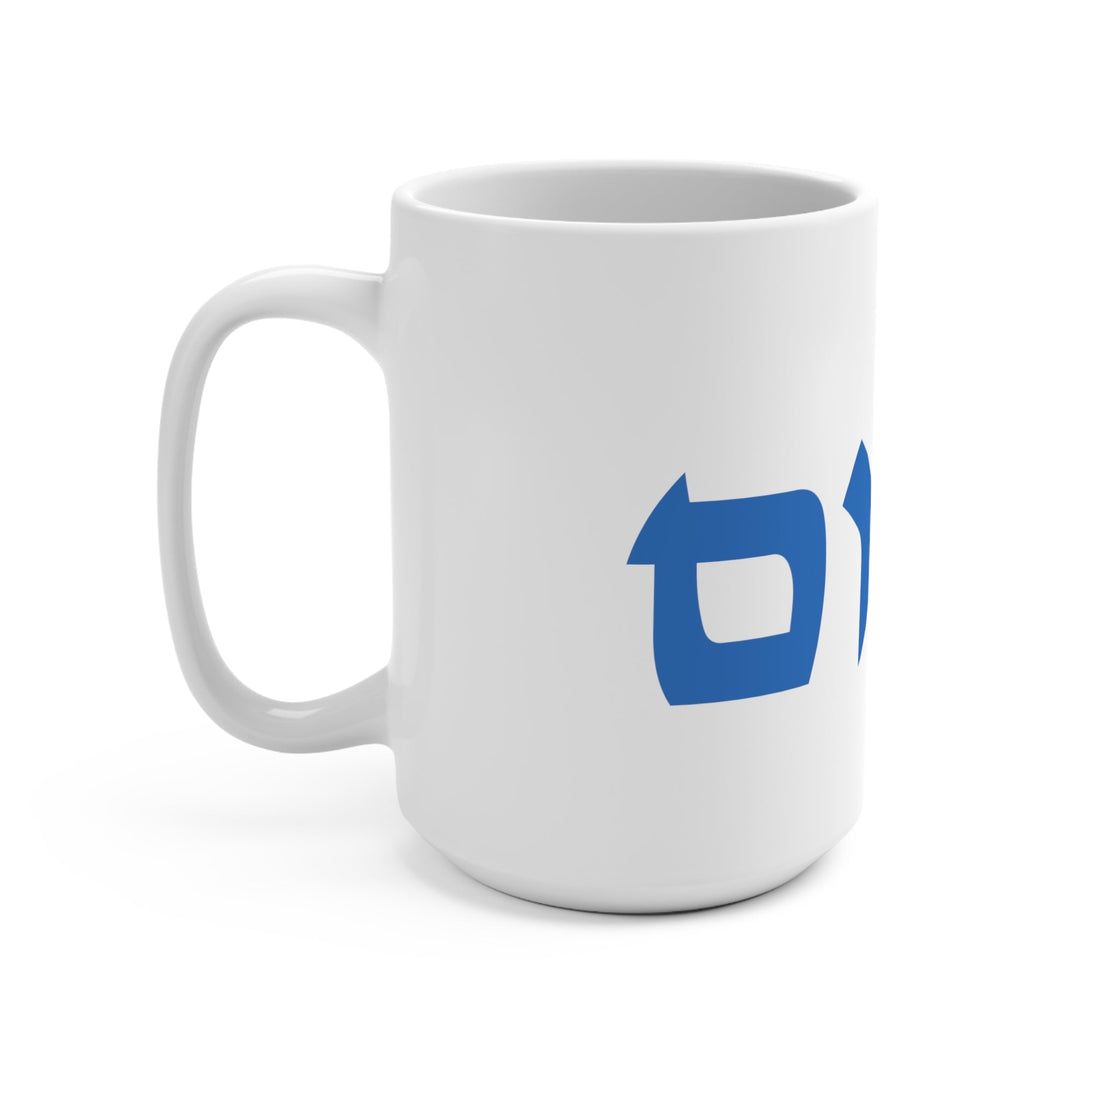 Shalom Ceramic Mug - Shop Israel